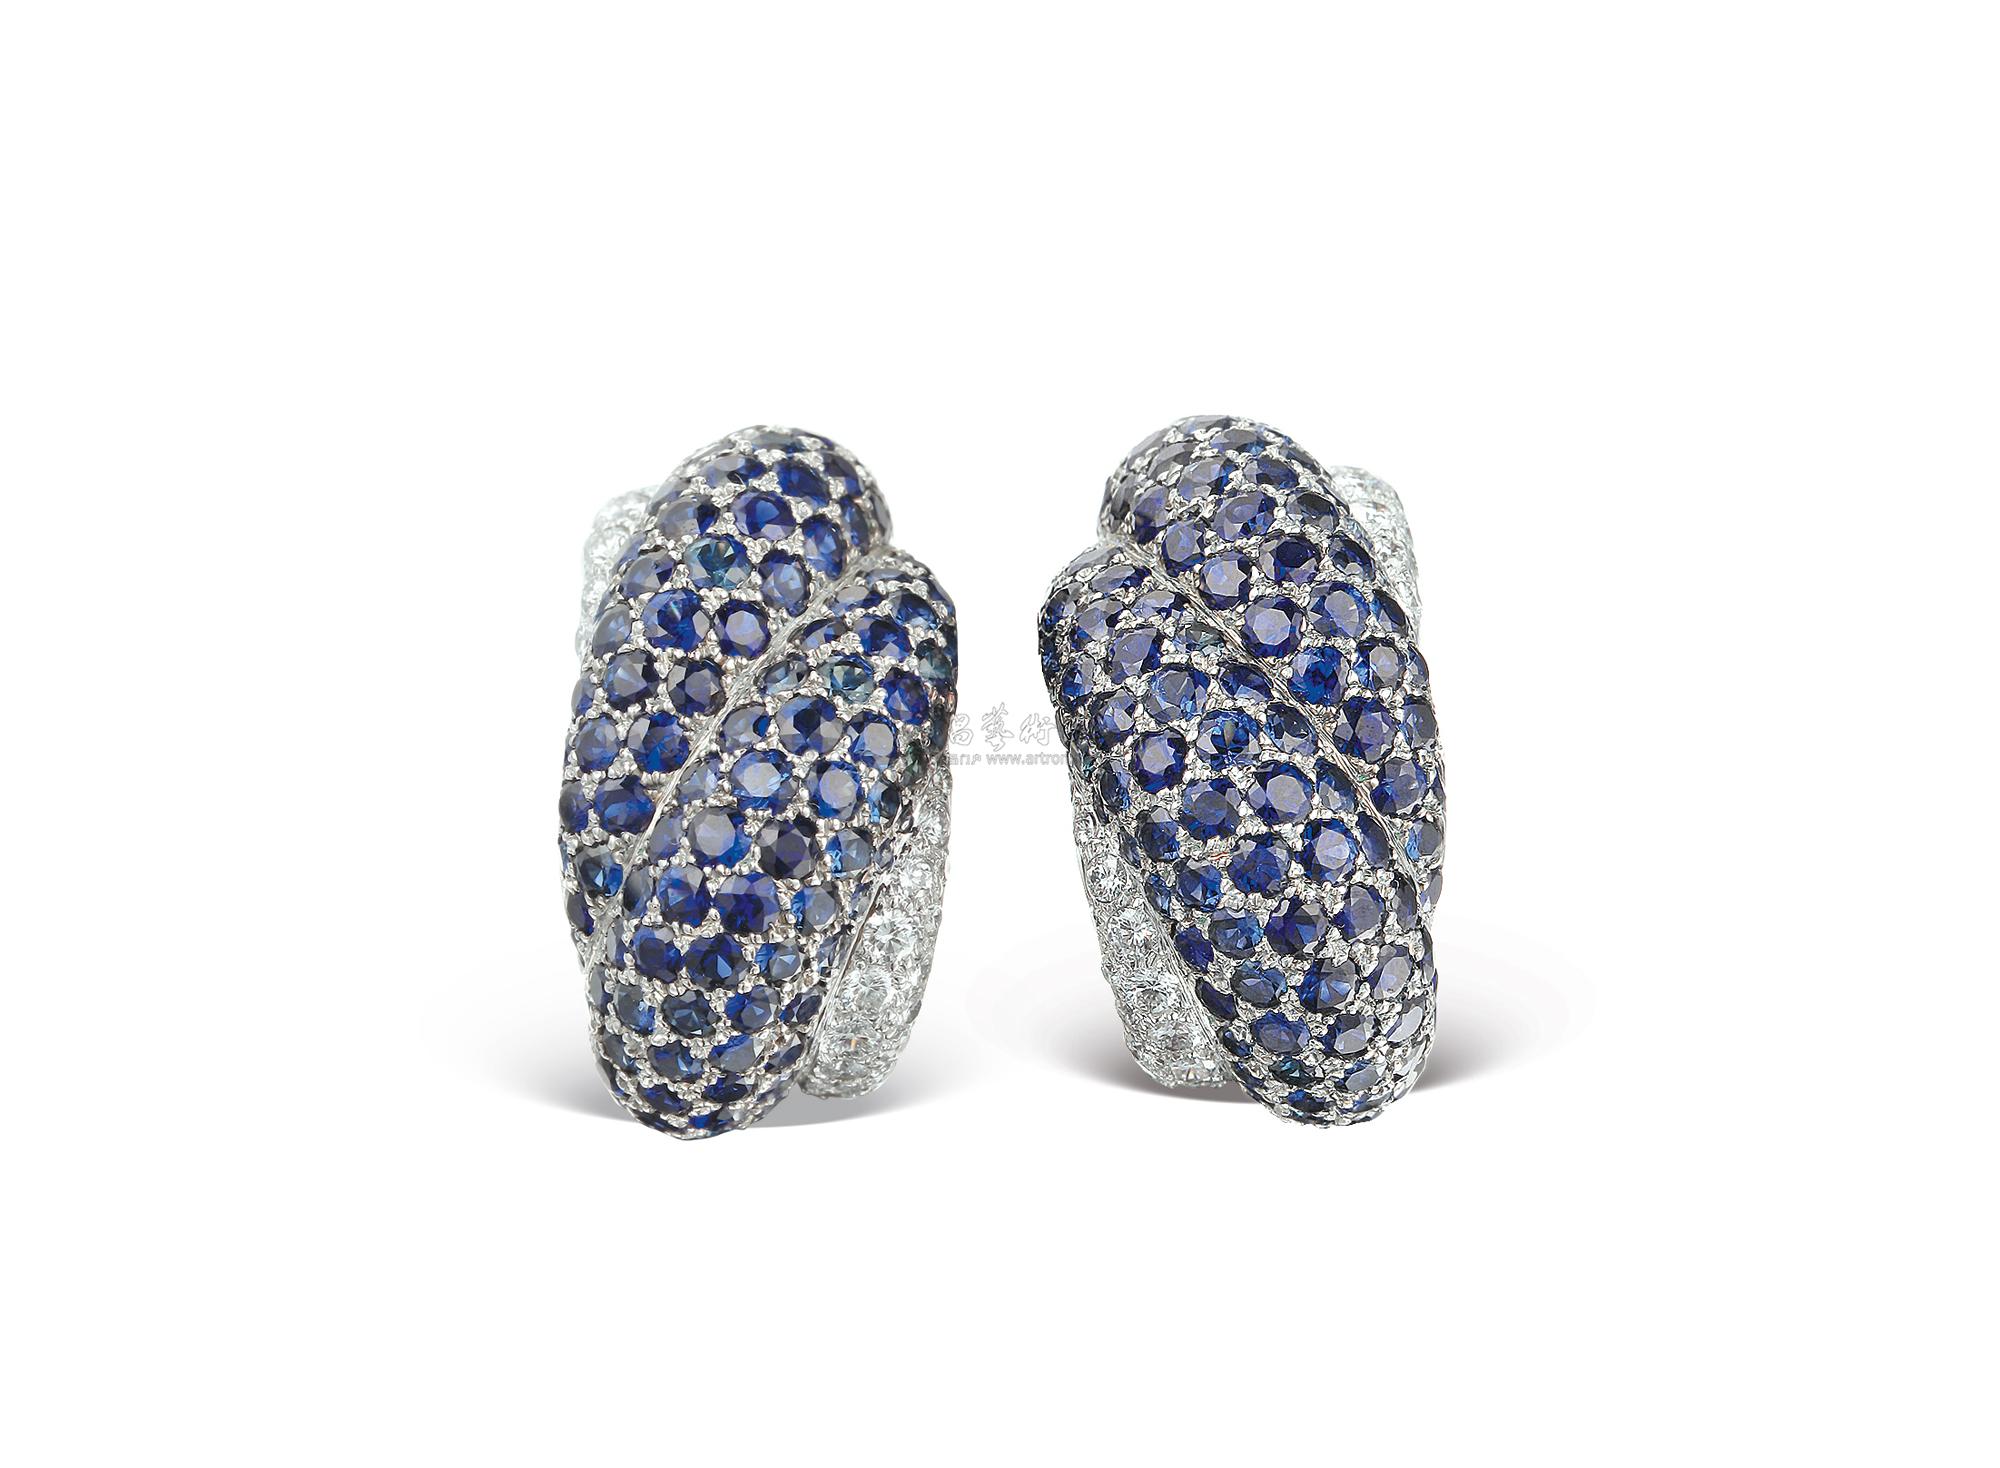 4859 肖邦 chopard 天然蓝宝石配钻石耳环 (一对)